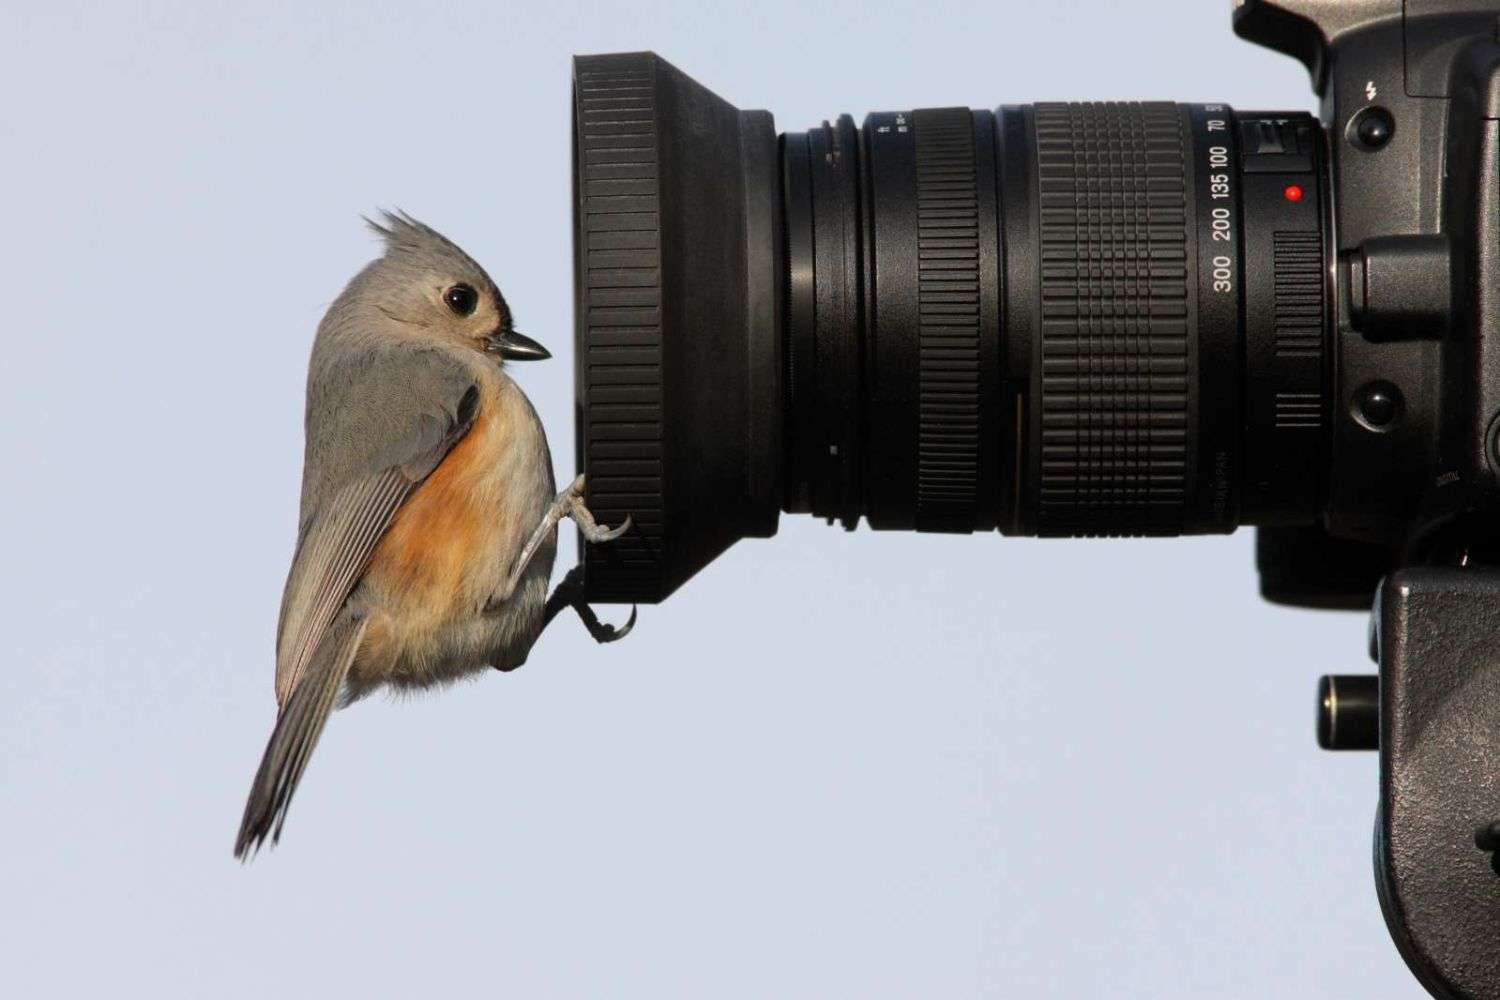  Oneware Wild Bird Feeder Camera, Smart Motion